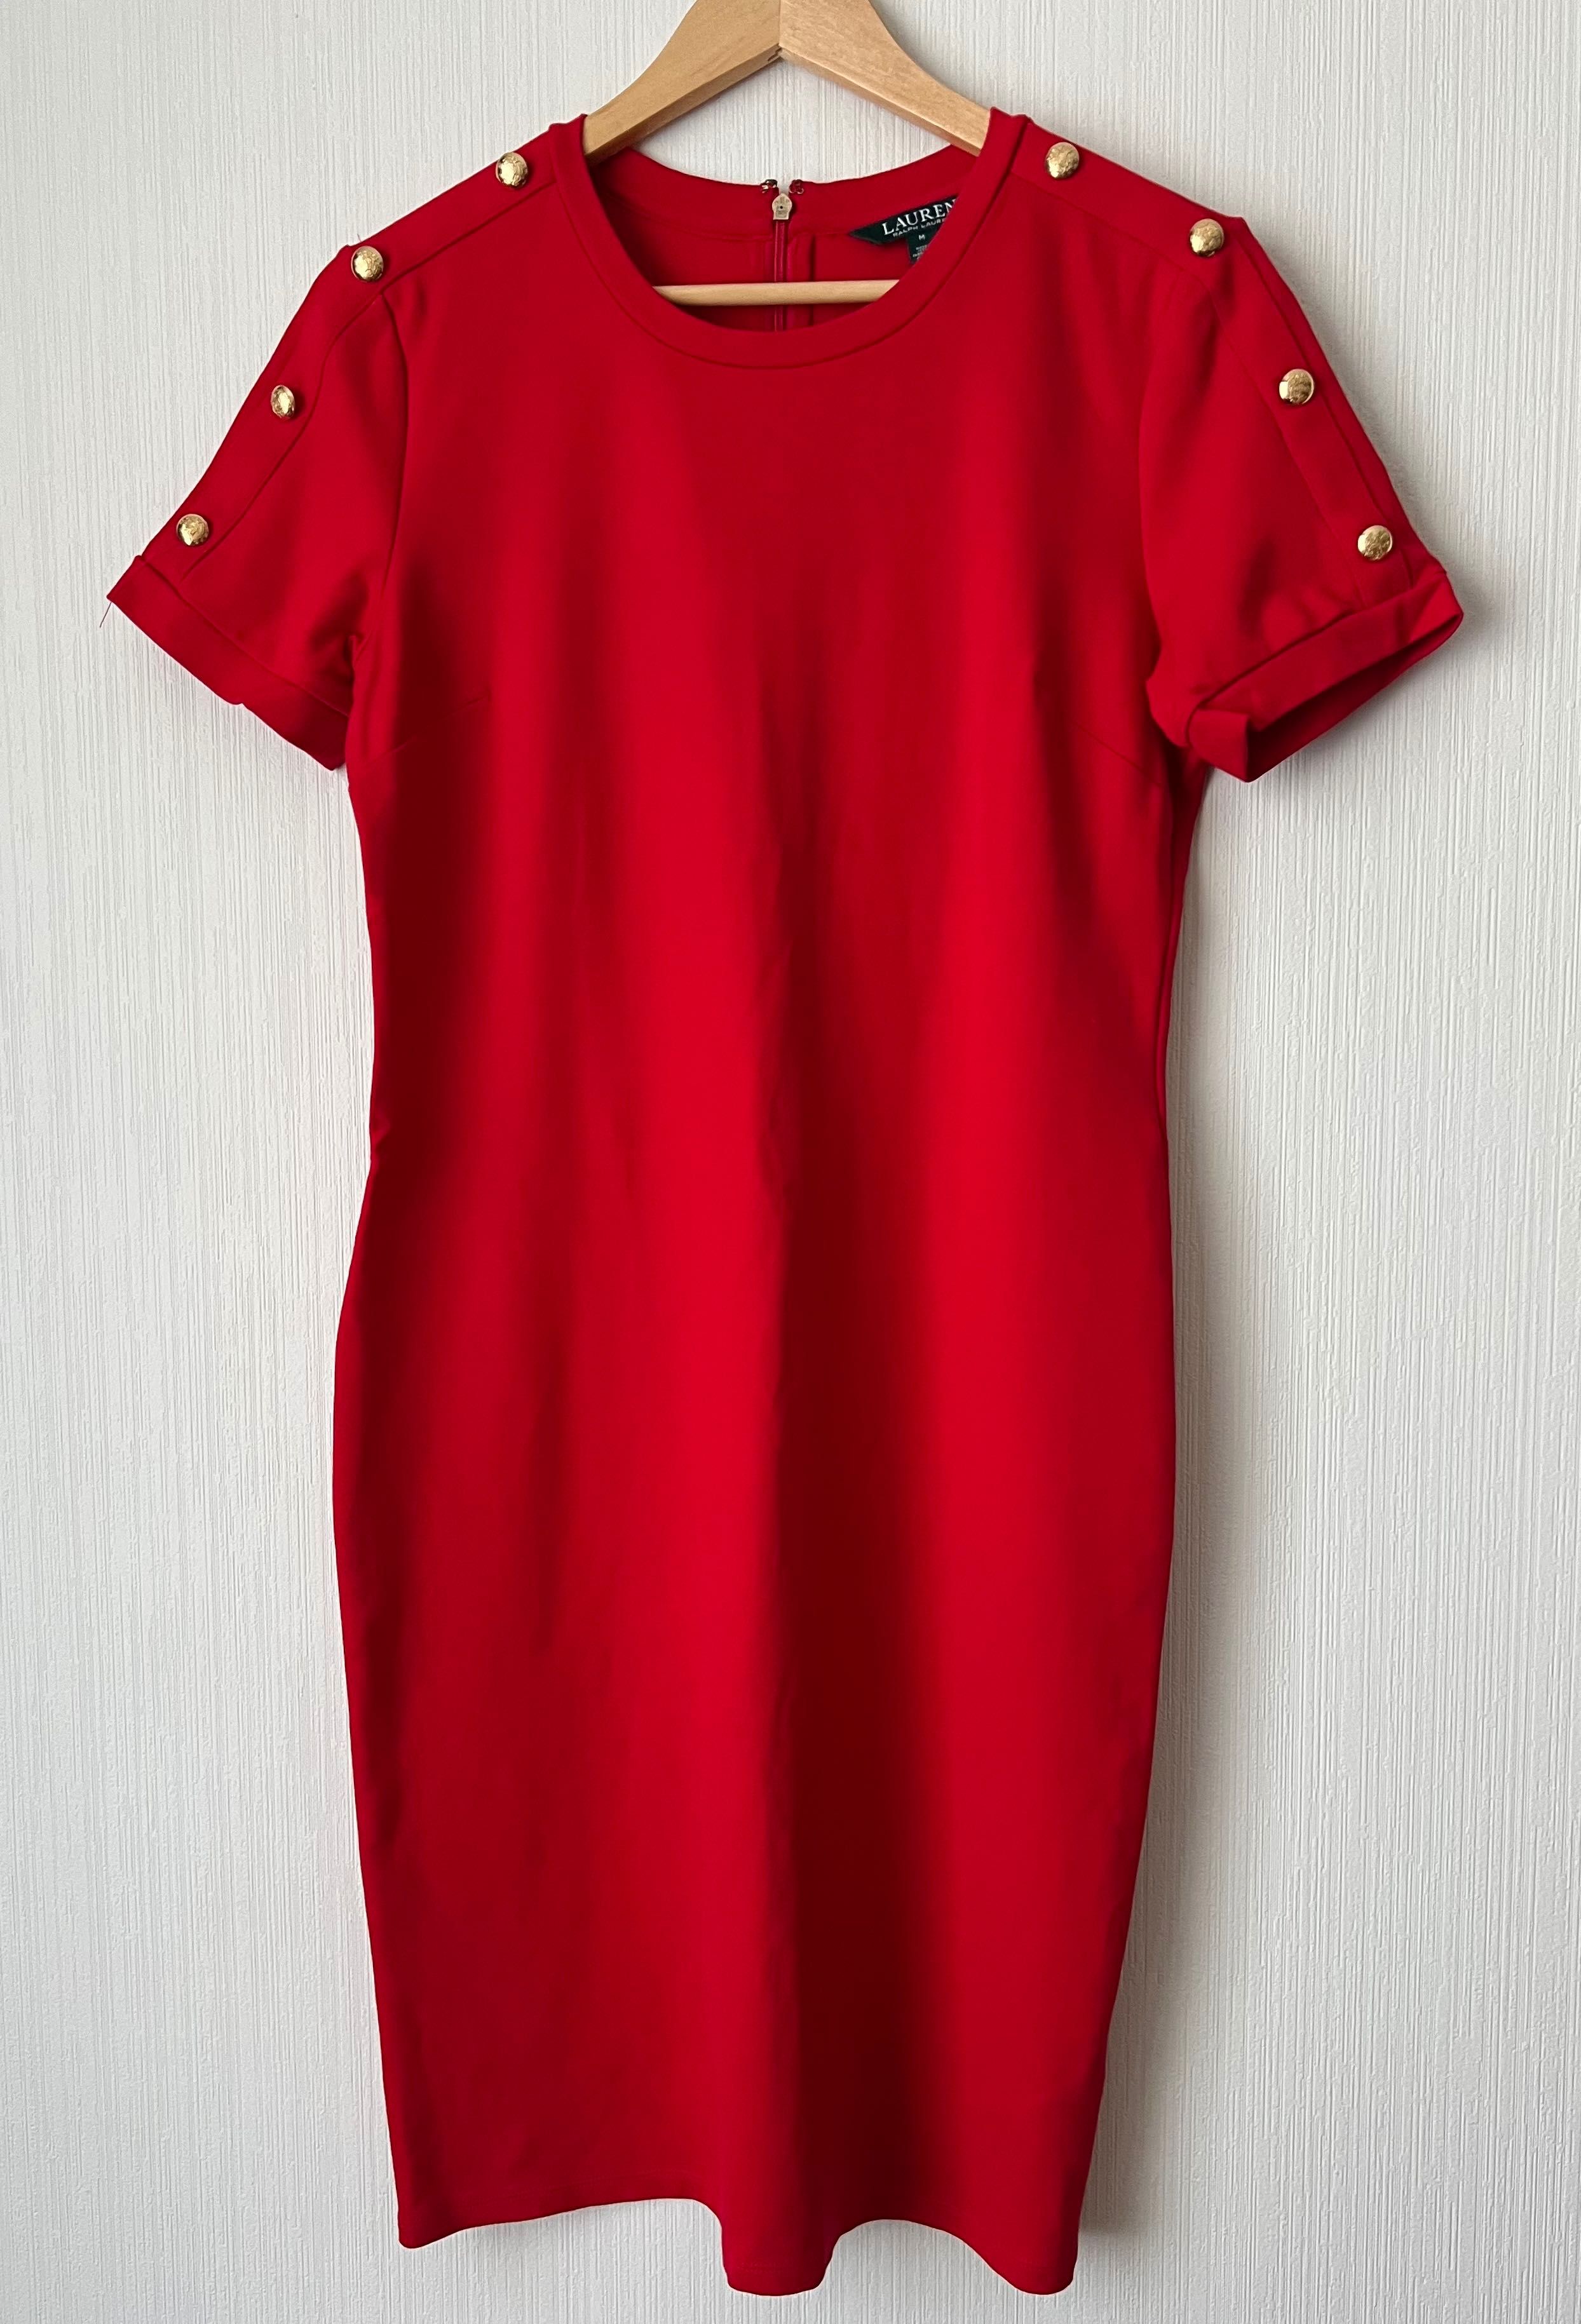 Жіноча сукня-футболка Ralph Lauren, розмір М, б/в